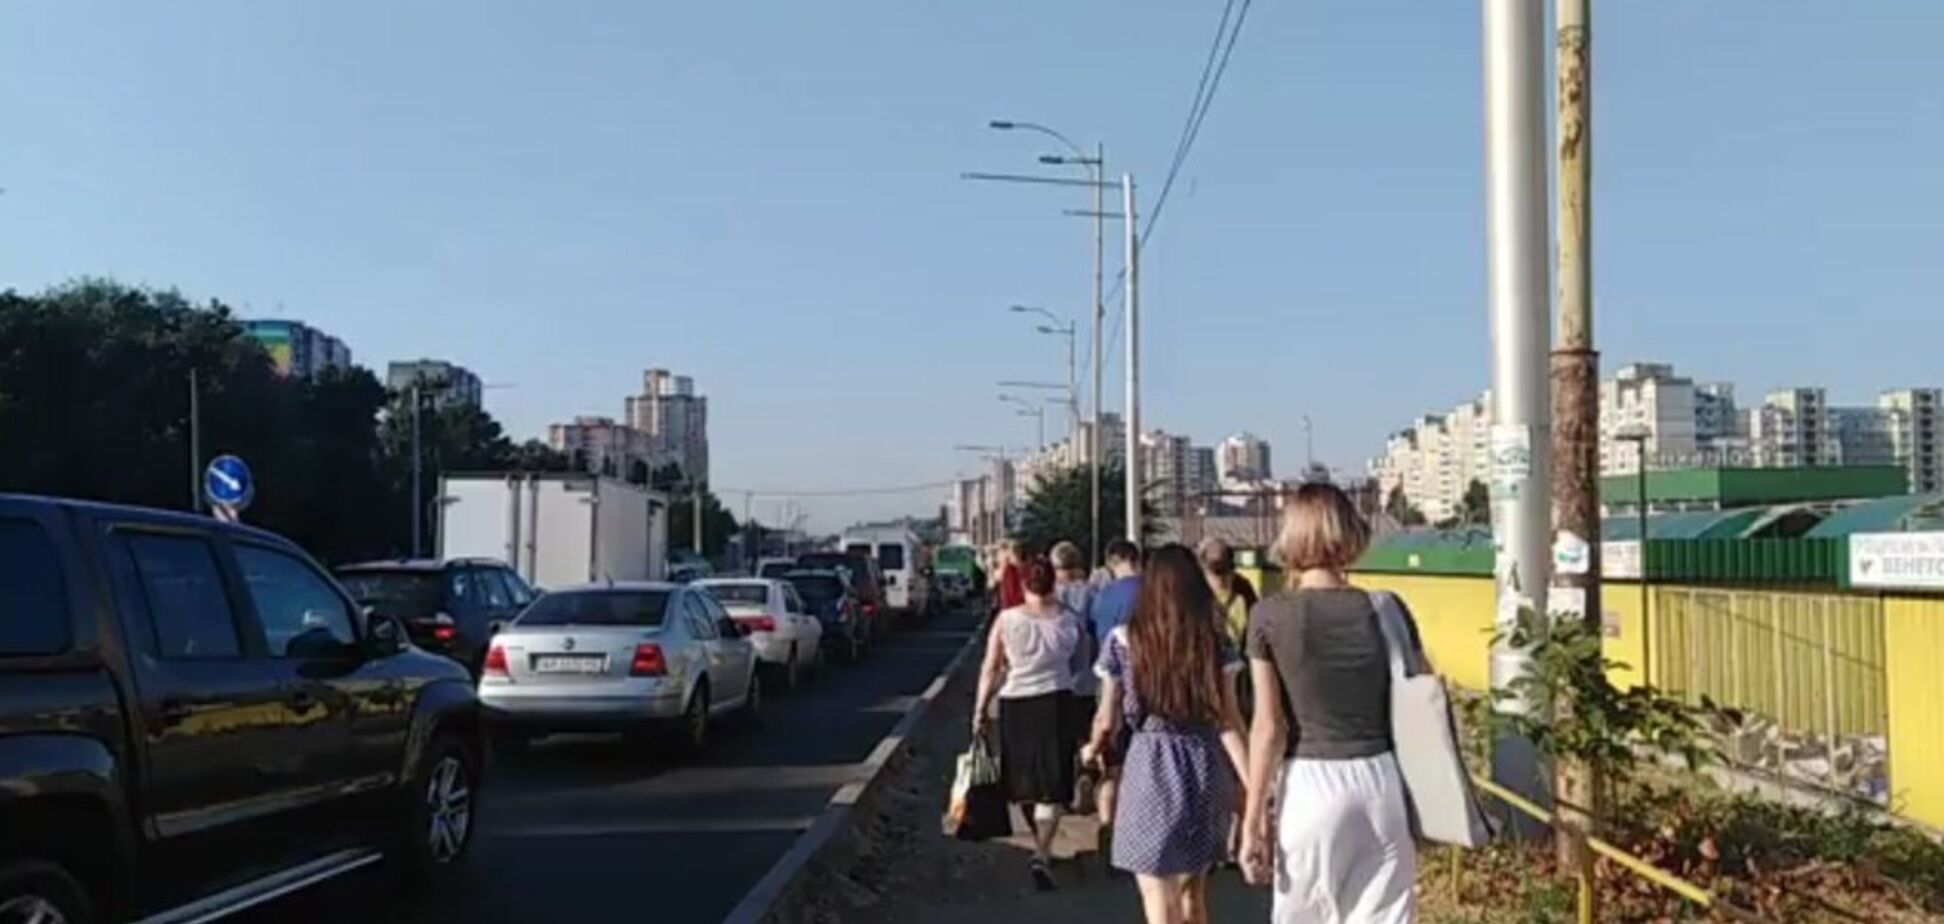 У Києві в годину пік перекрили трасу: люди пішки добиралися до метро. Відео